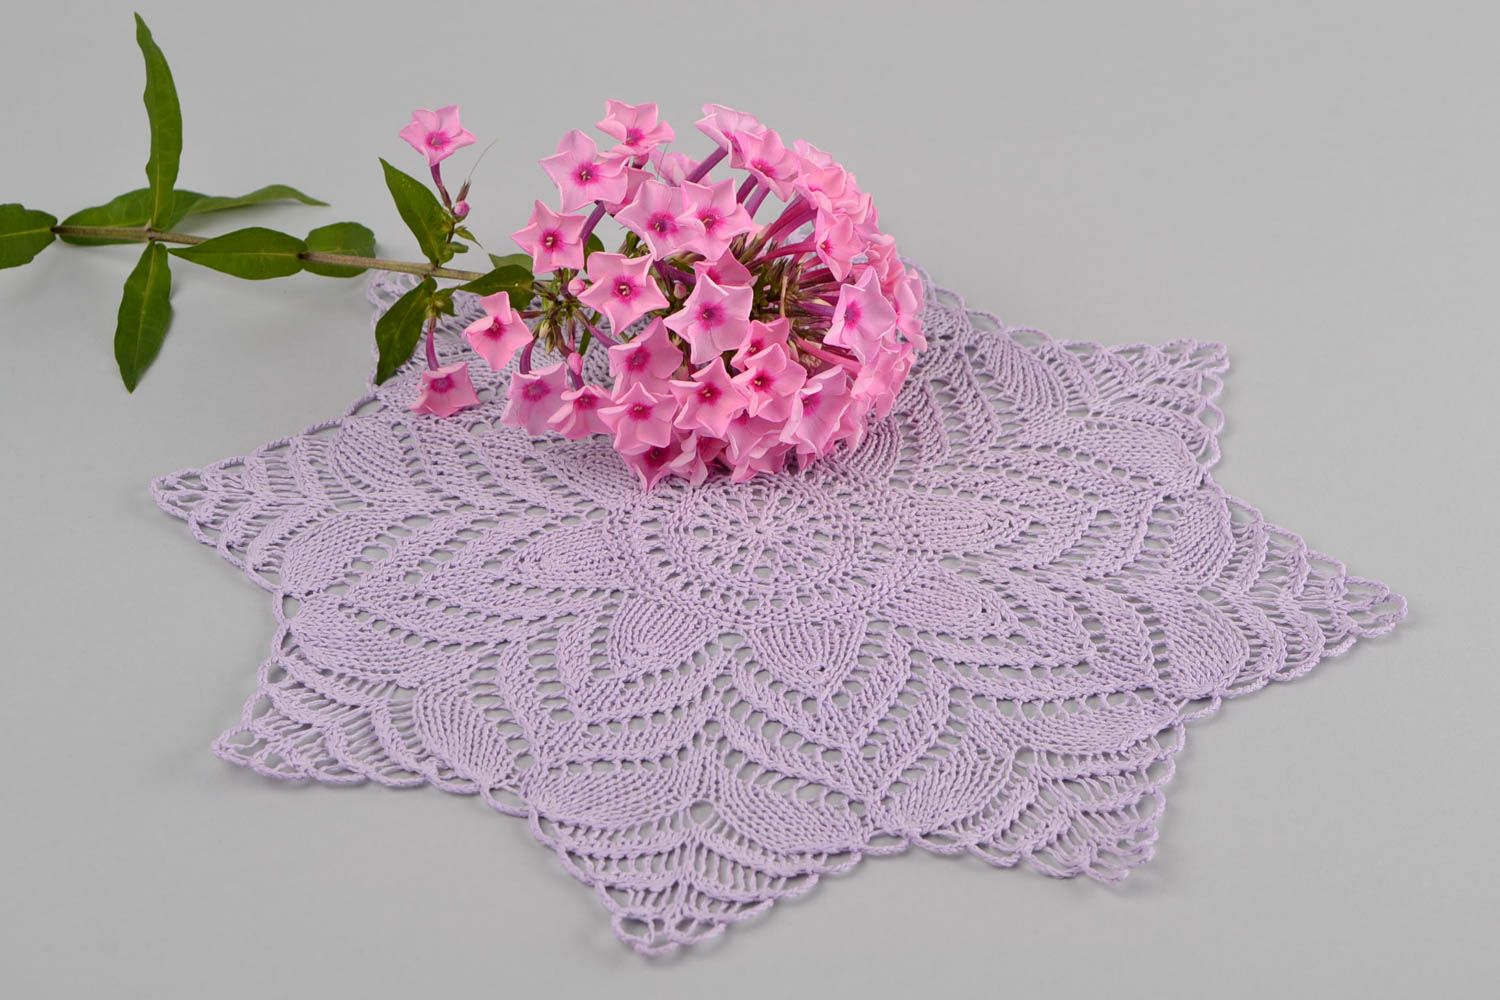 Napperon violet fait main Textile de table tricoté ajouré Décoration maison photo 1